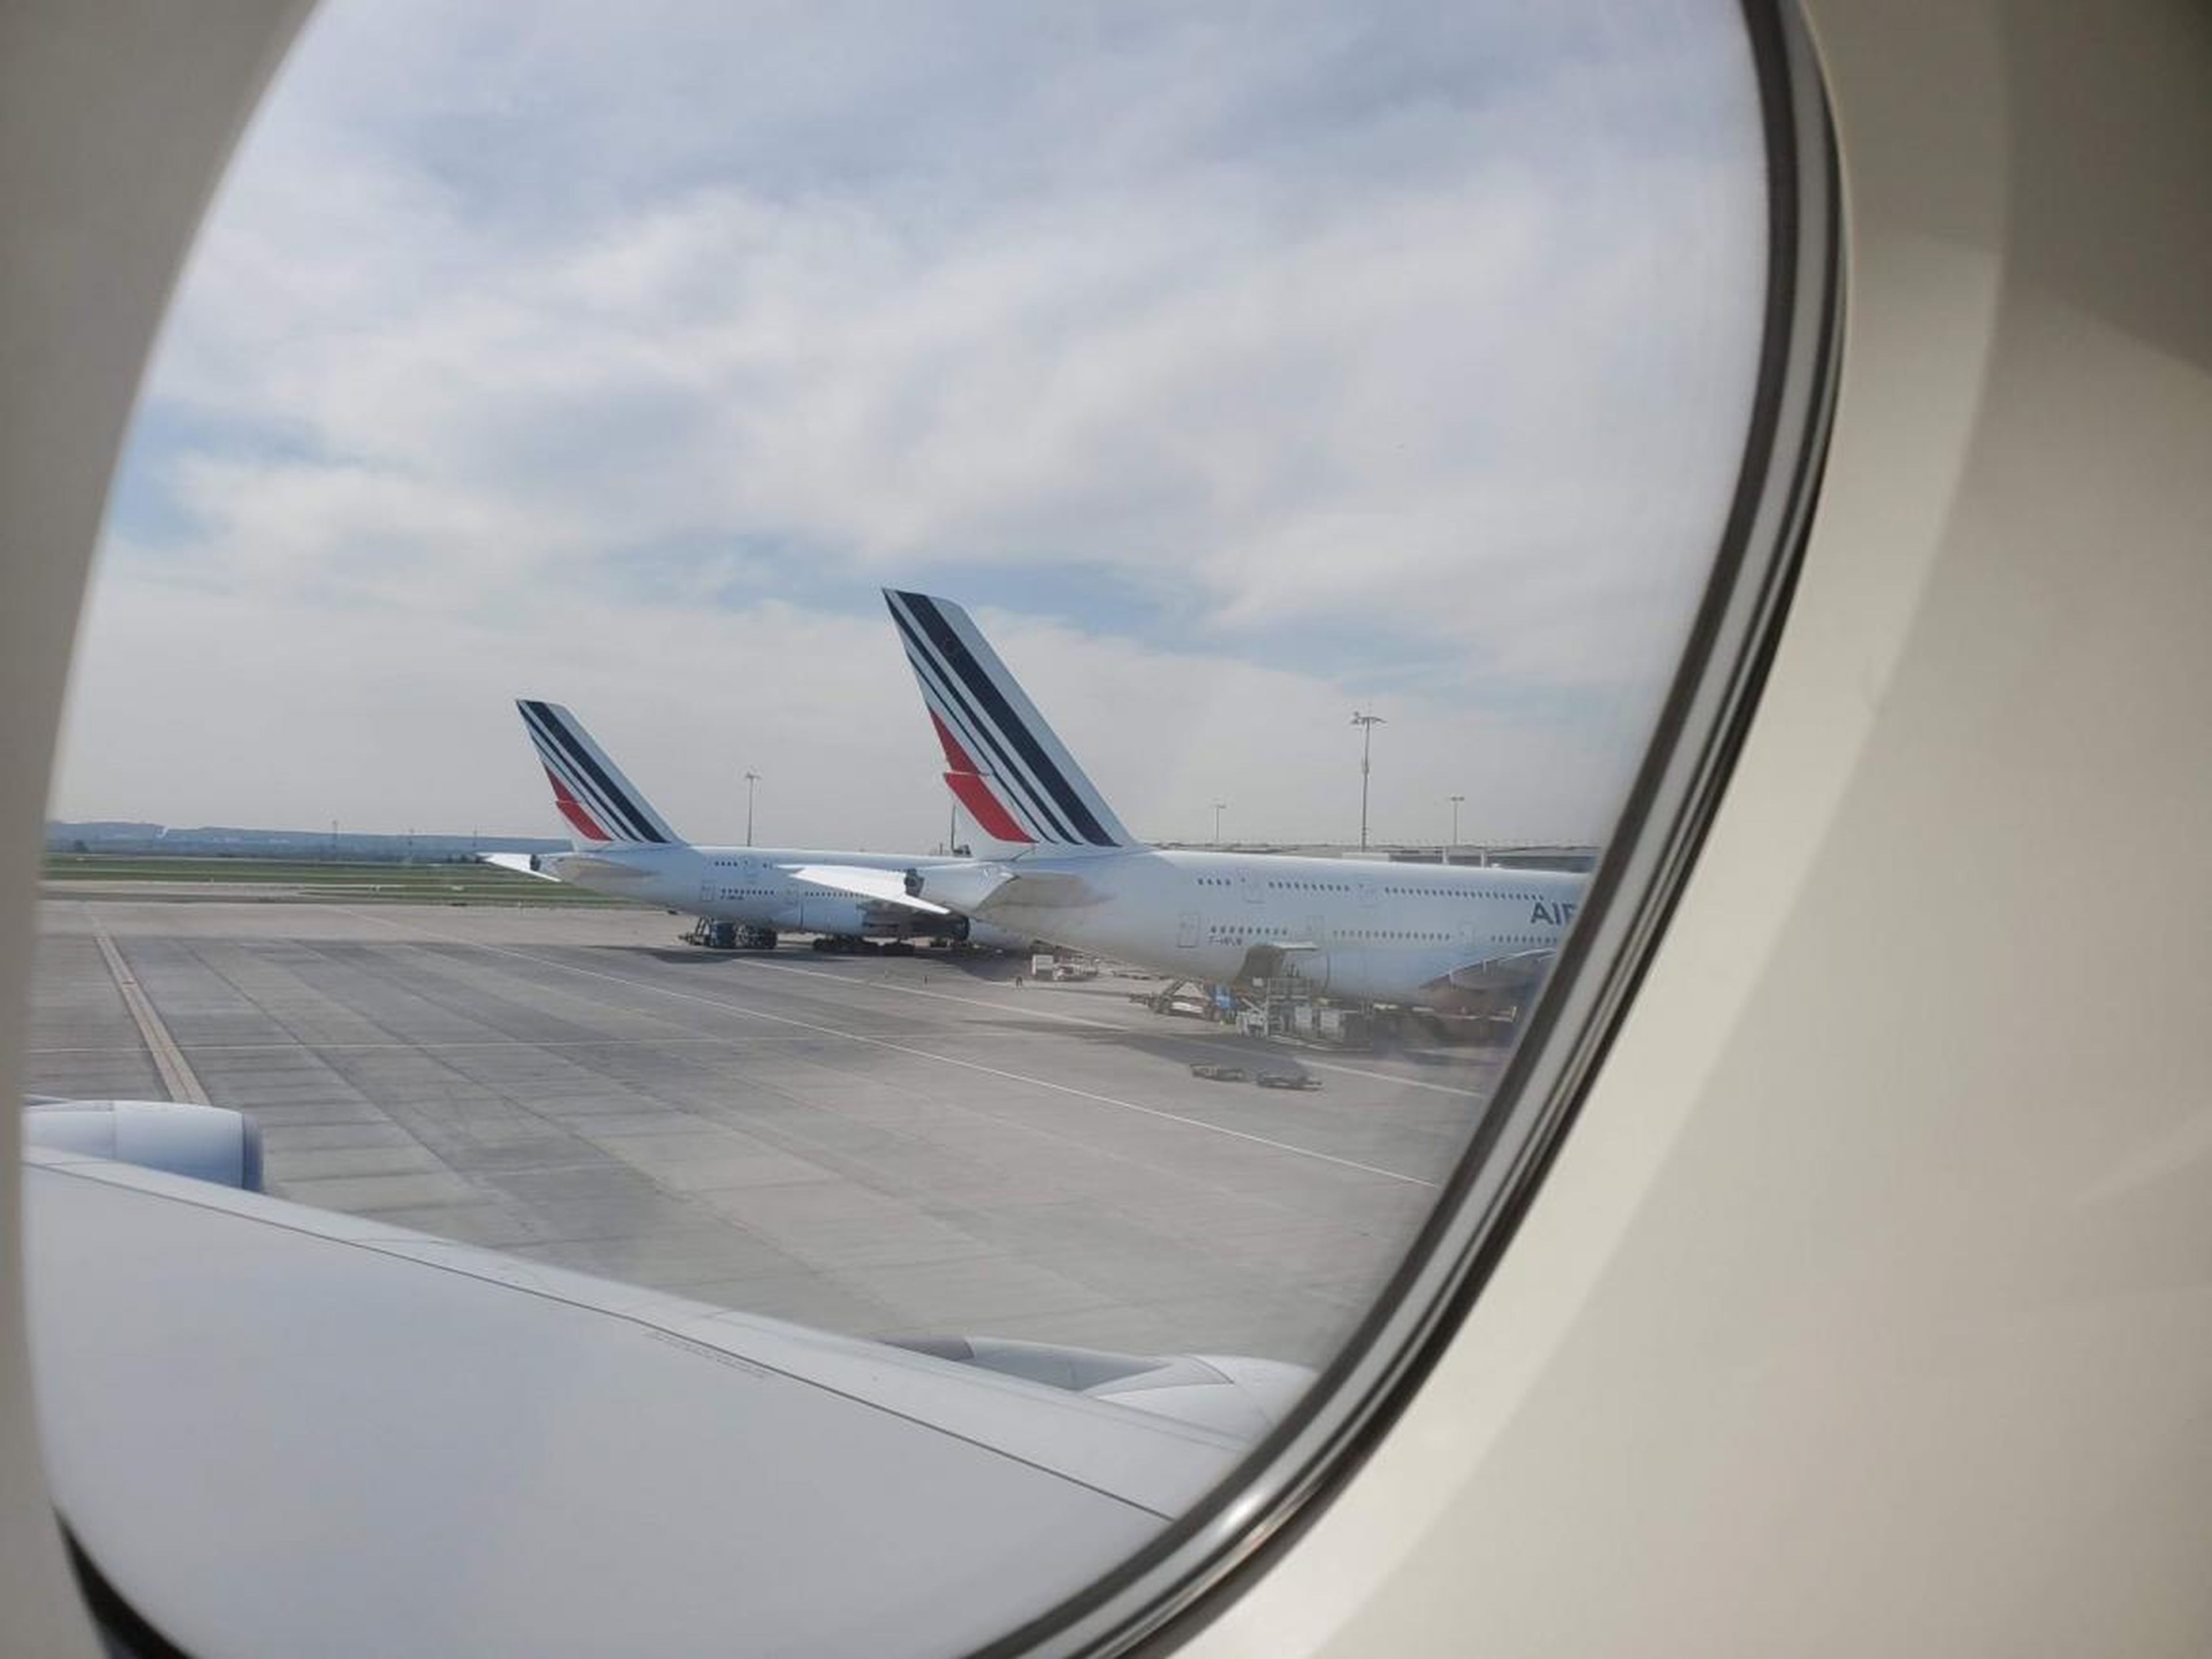 Cuando llegamos al aeropuerto Charles de Gaulle, dos de los cinco A380 de Air France estaban aparcados en las puertas de embarque. Fue increíble ver a tantos en el mismo lugar.